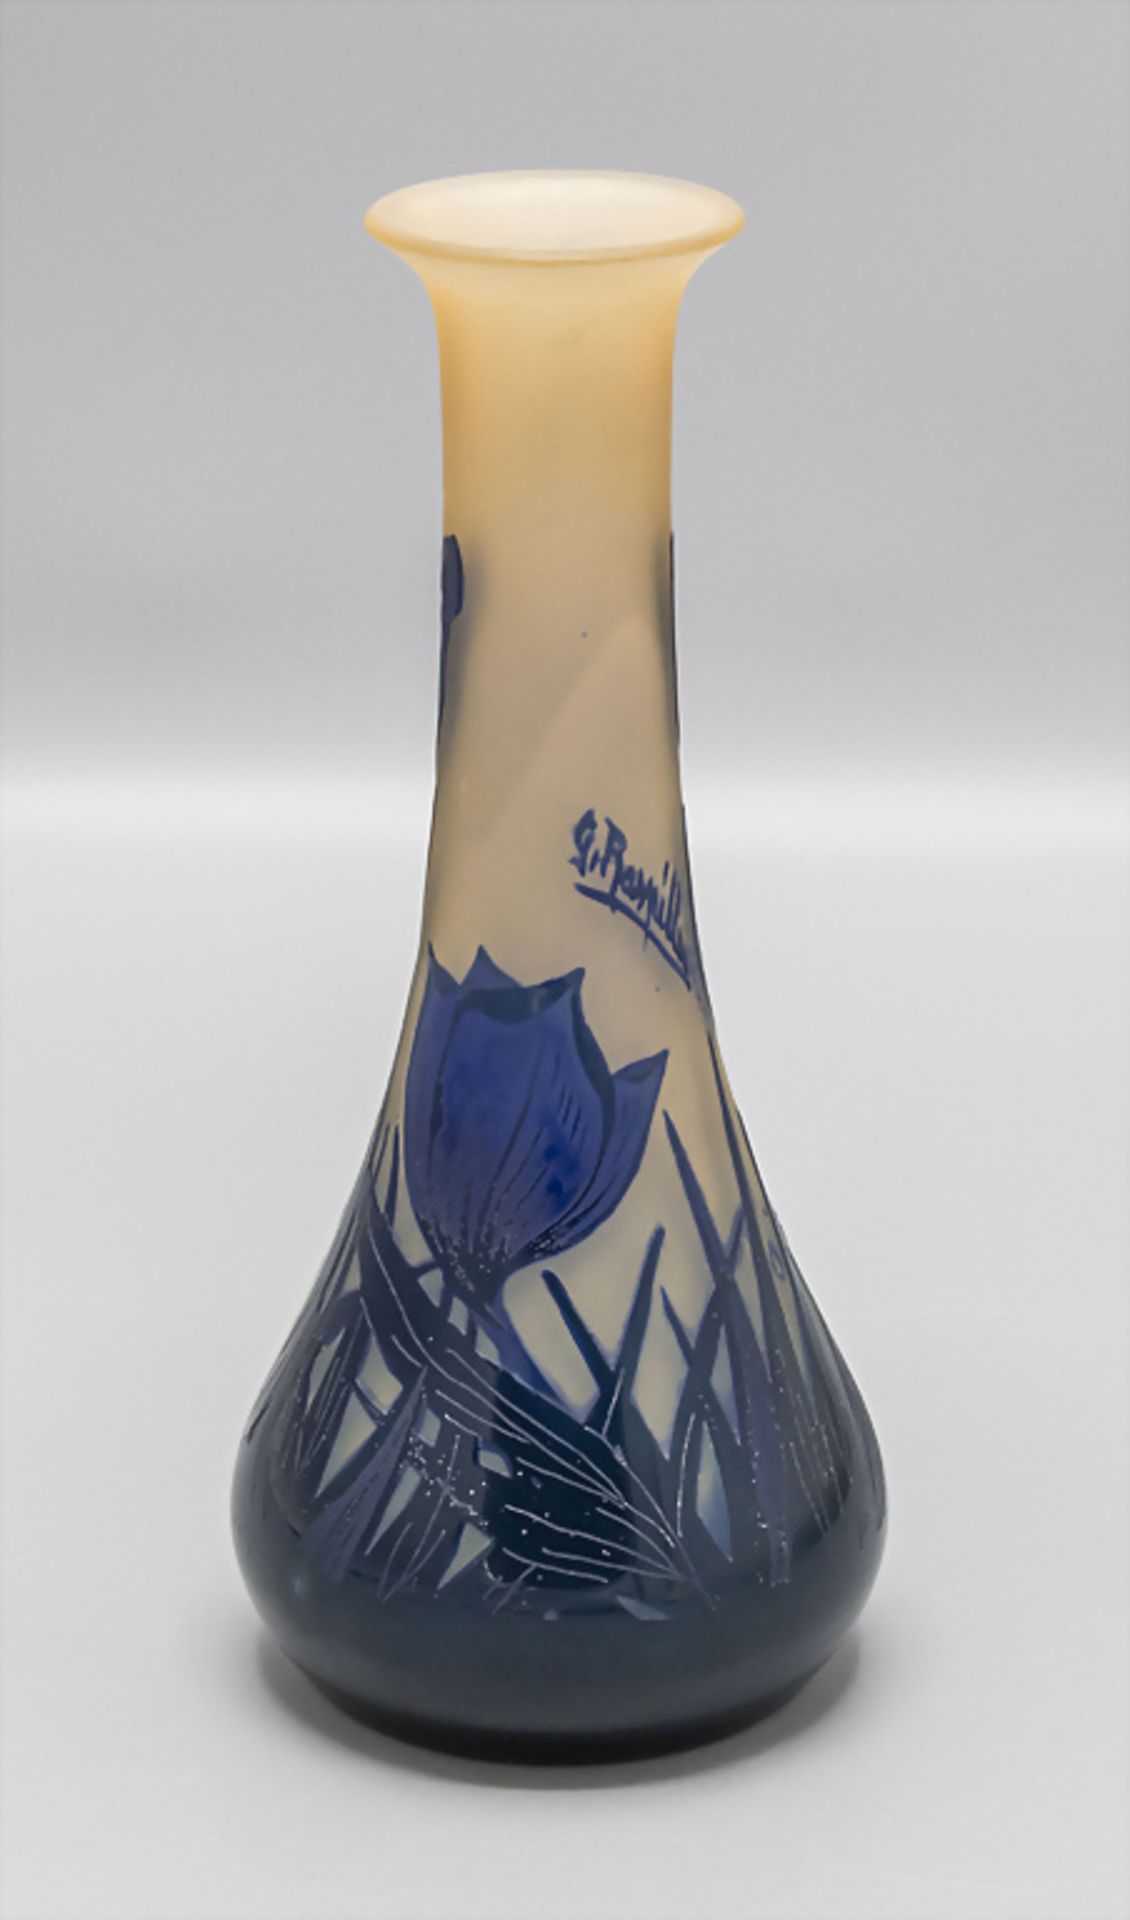 Jugendstil Vase 'Frühblüher' / An Art Noveau vase 'Early bloomers', Georges Raspiller, ... - Image 2 of 6